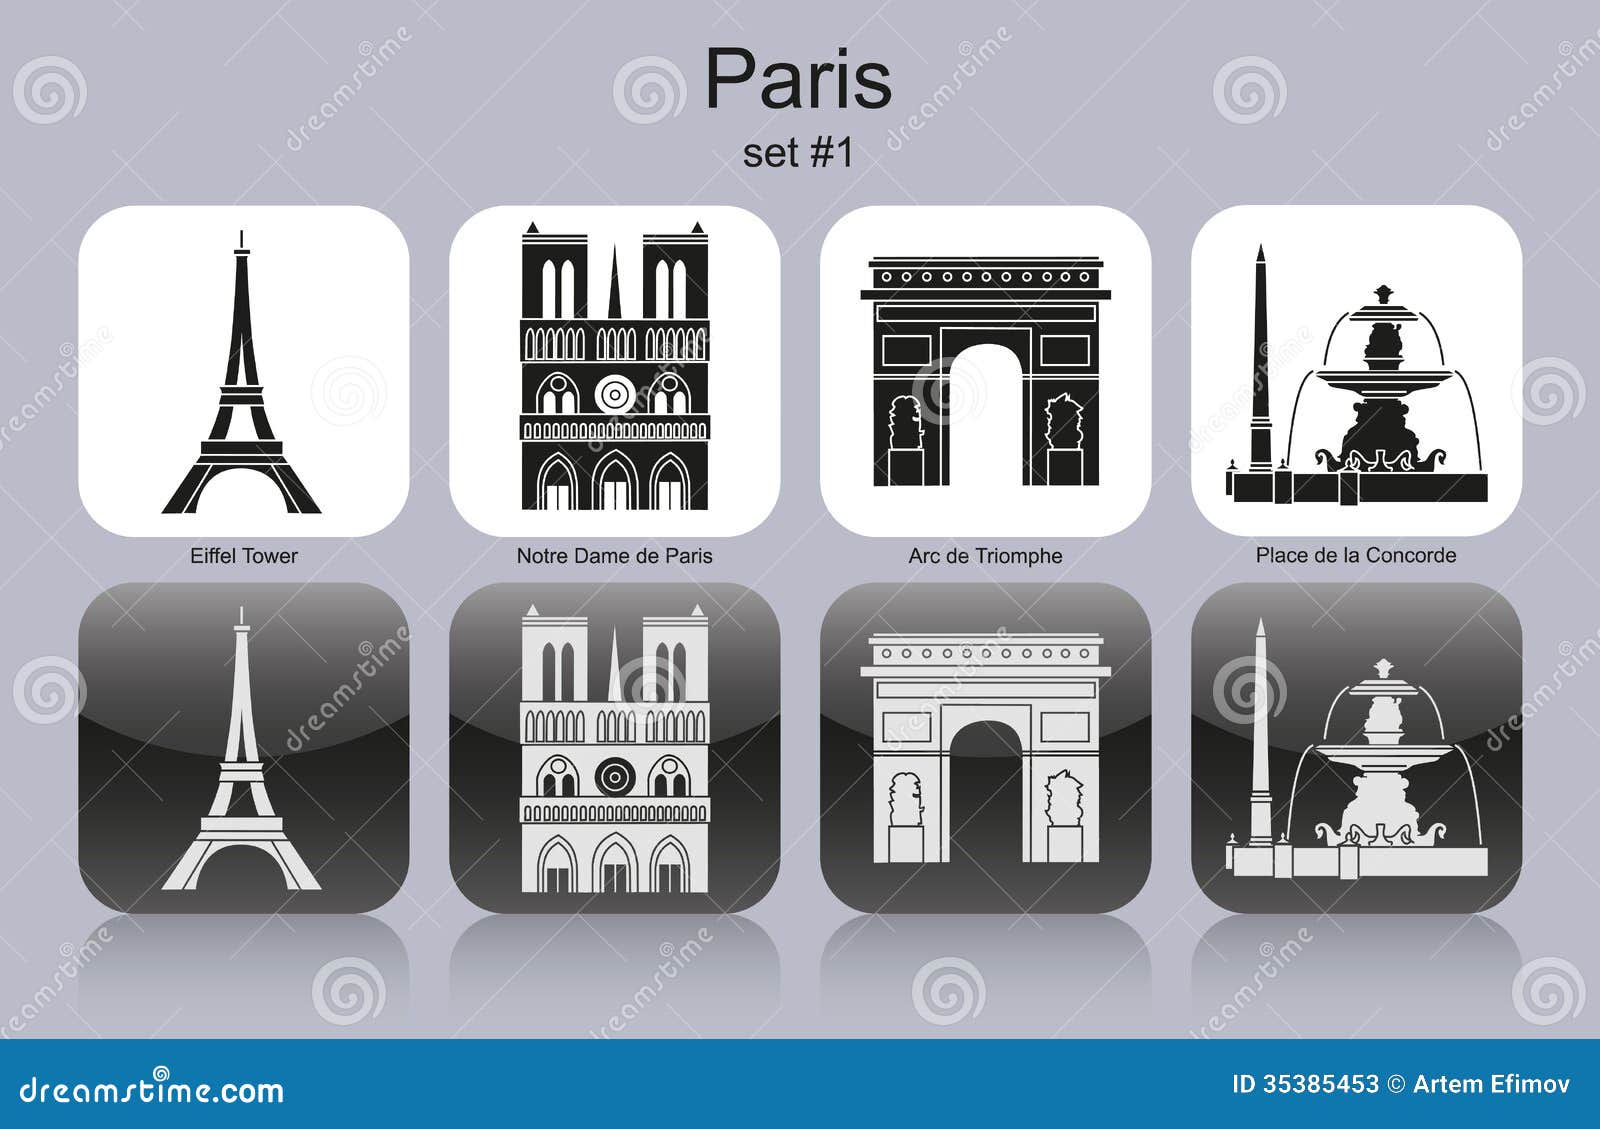 paris icons